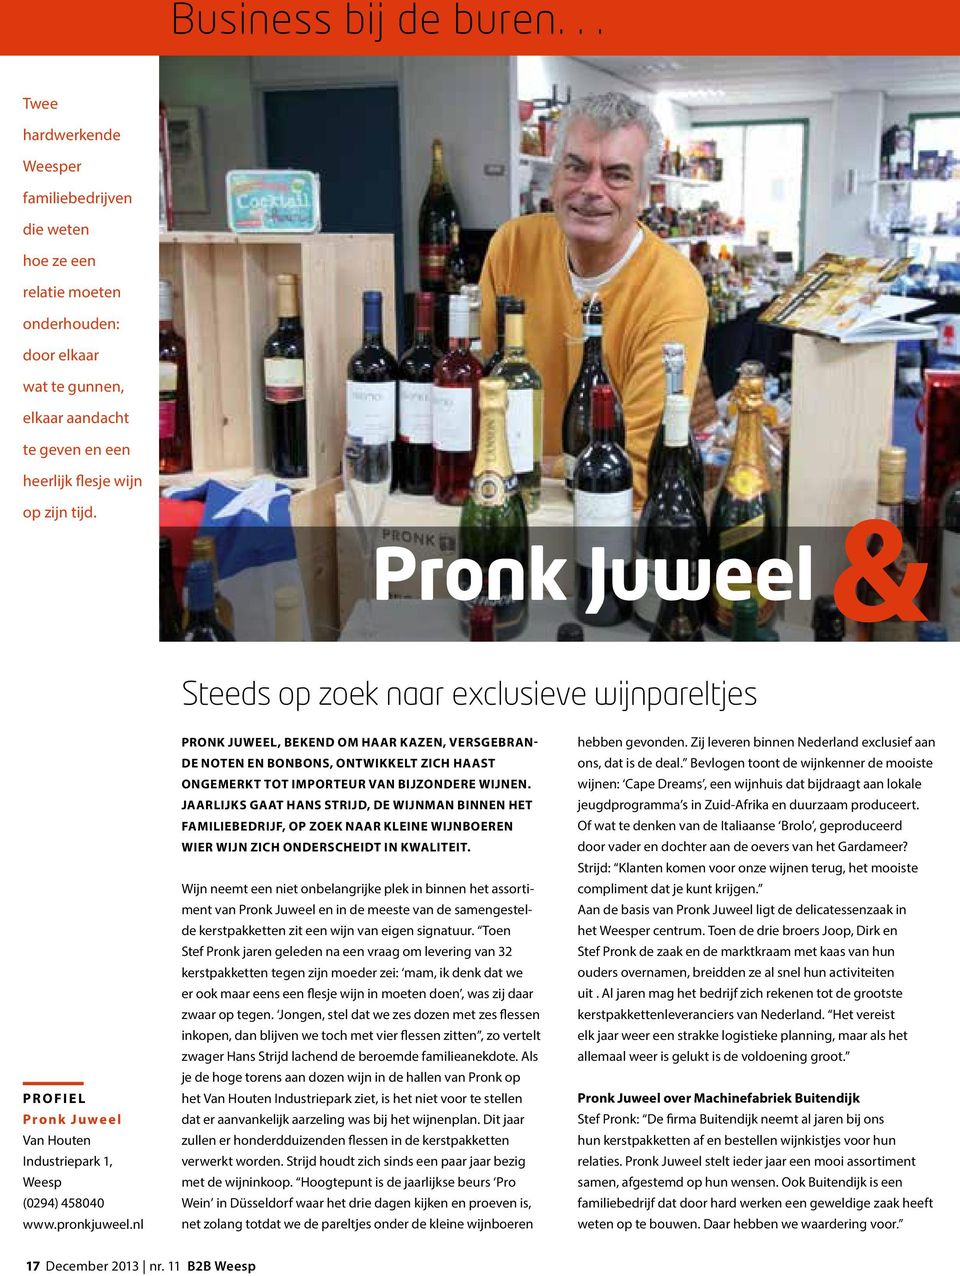 Pronk Juweel Steeds op zoek naar exclusieve wijnpareltjes Profiel Pronk Juweel Van Houten Industriepark 1, Weesp (0294) 458040 www.pronkjuweel.